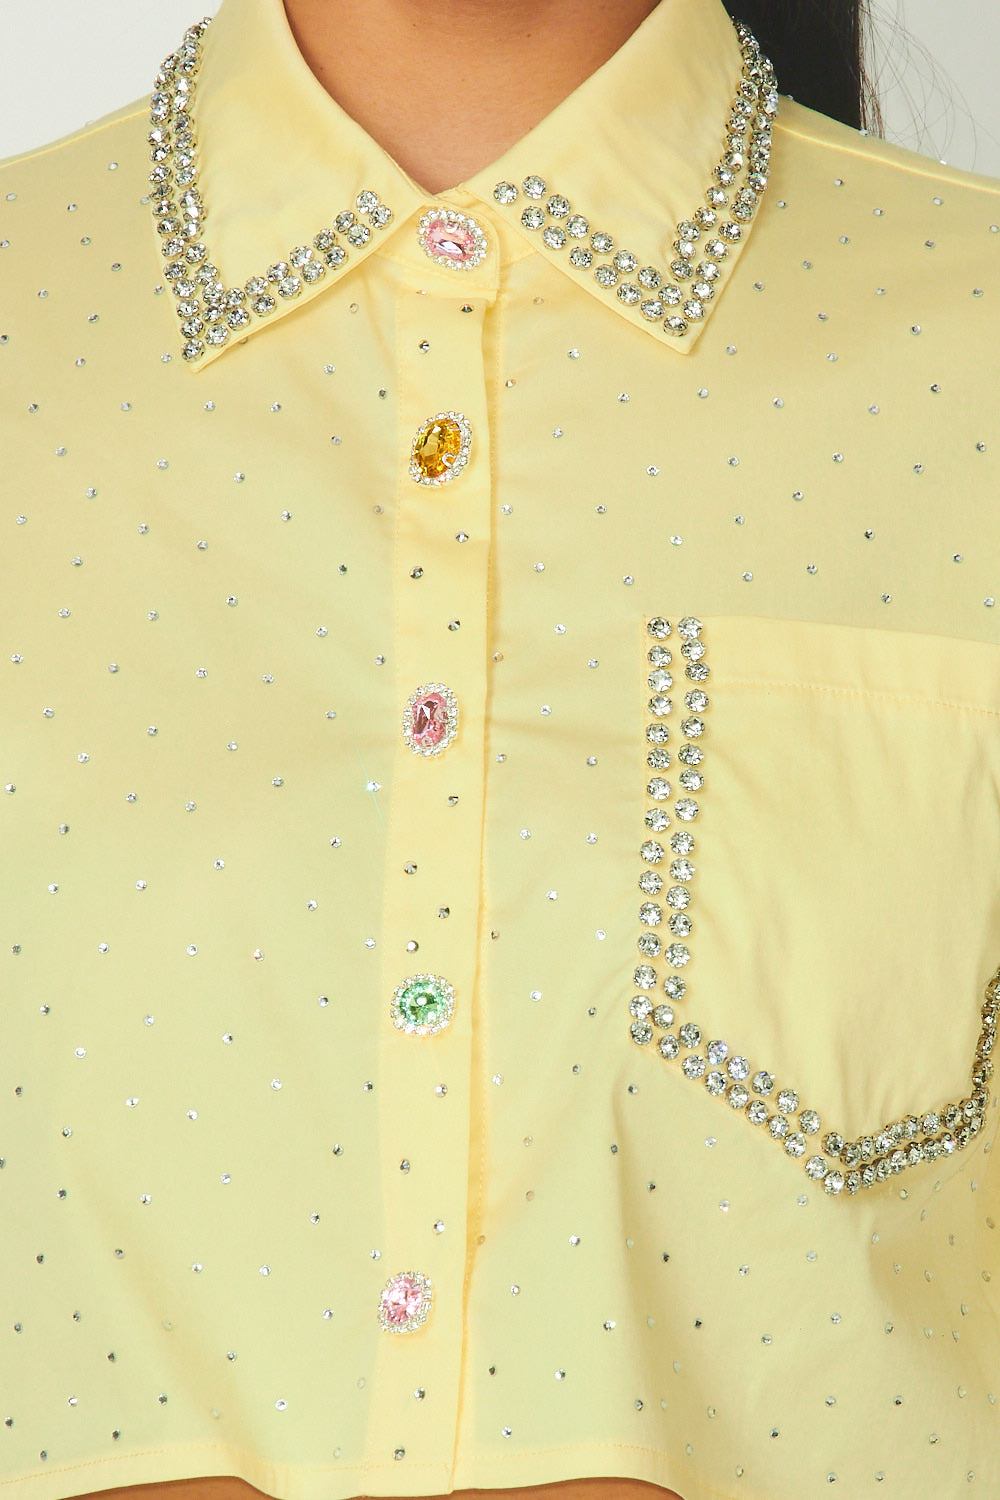 Enya Rhinestone Detailed Crop Button Up Shirt